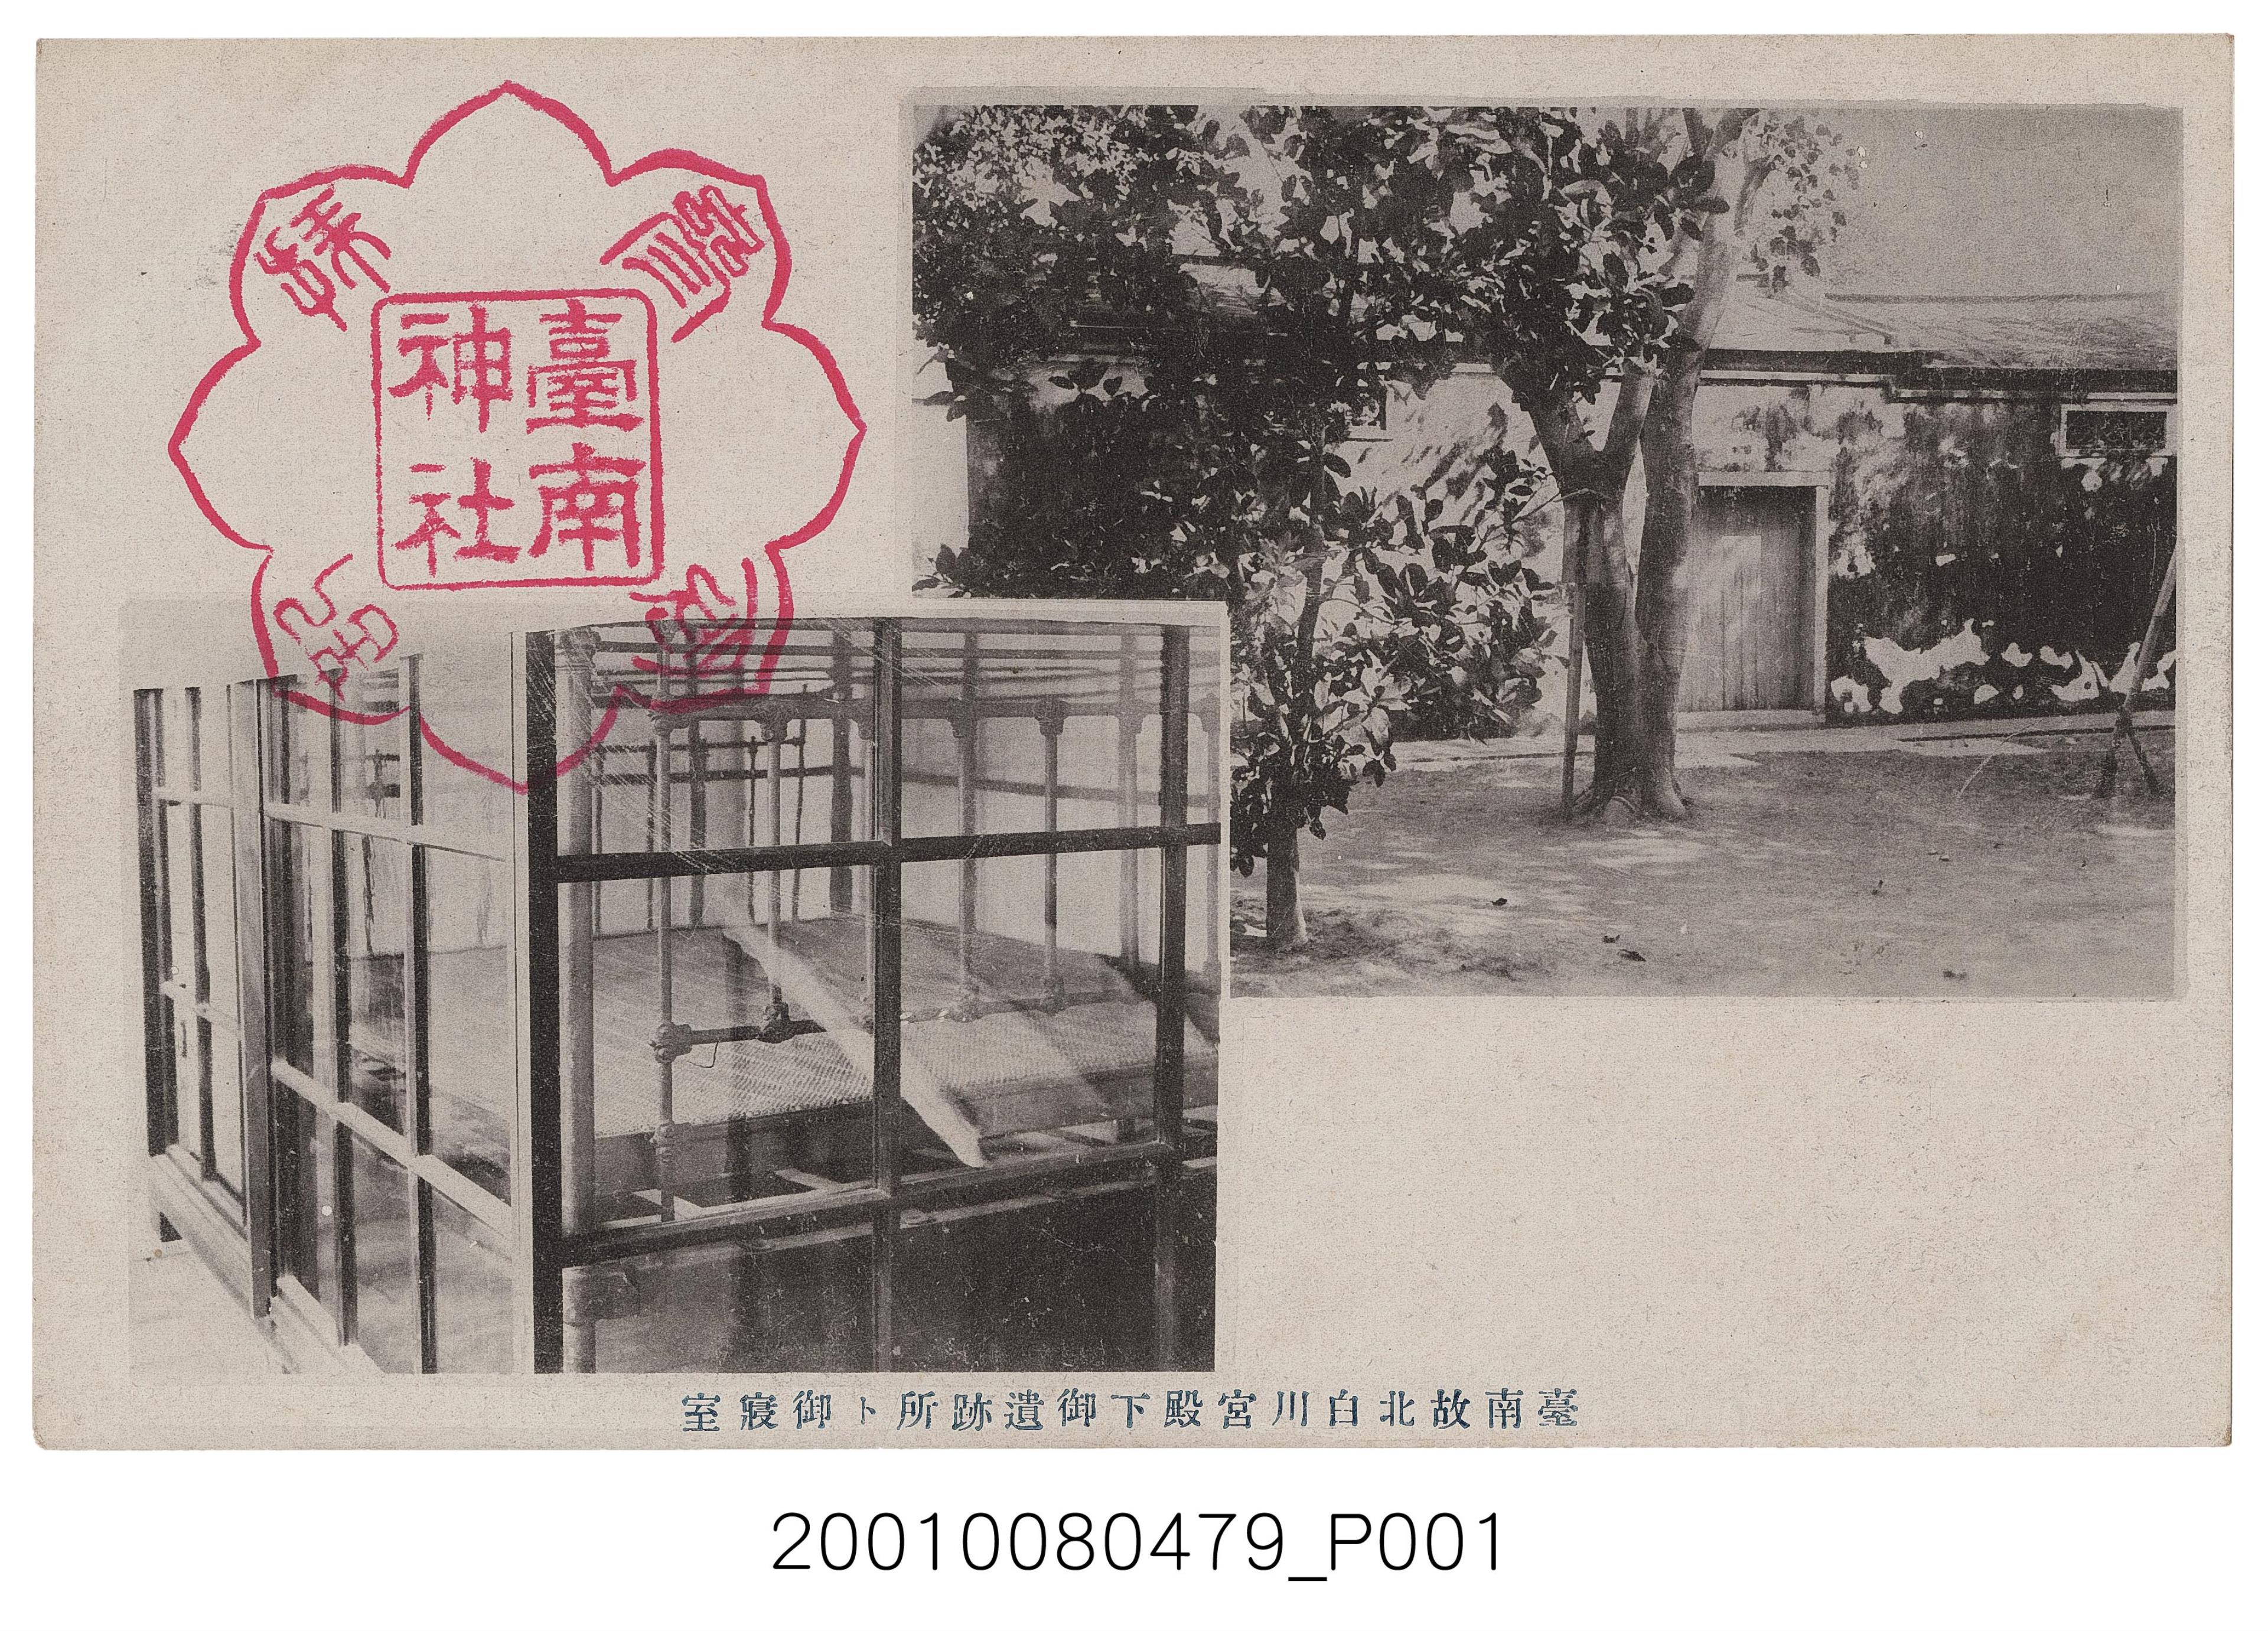 臺南神社社務所發行故北白川宮殿下之遺跡與寢室 (共2張)